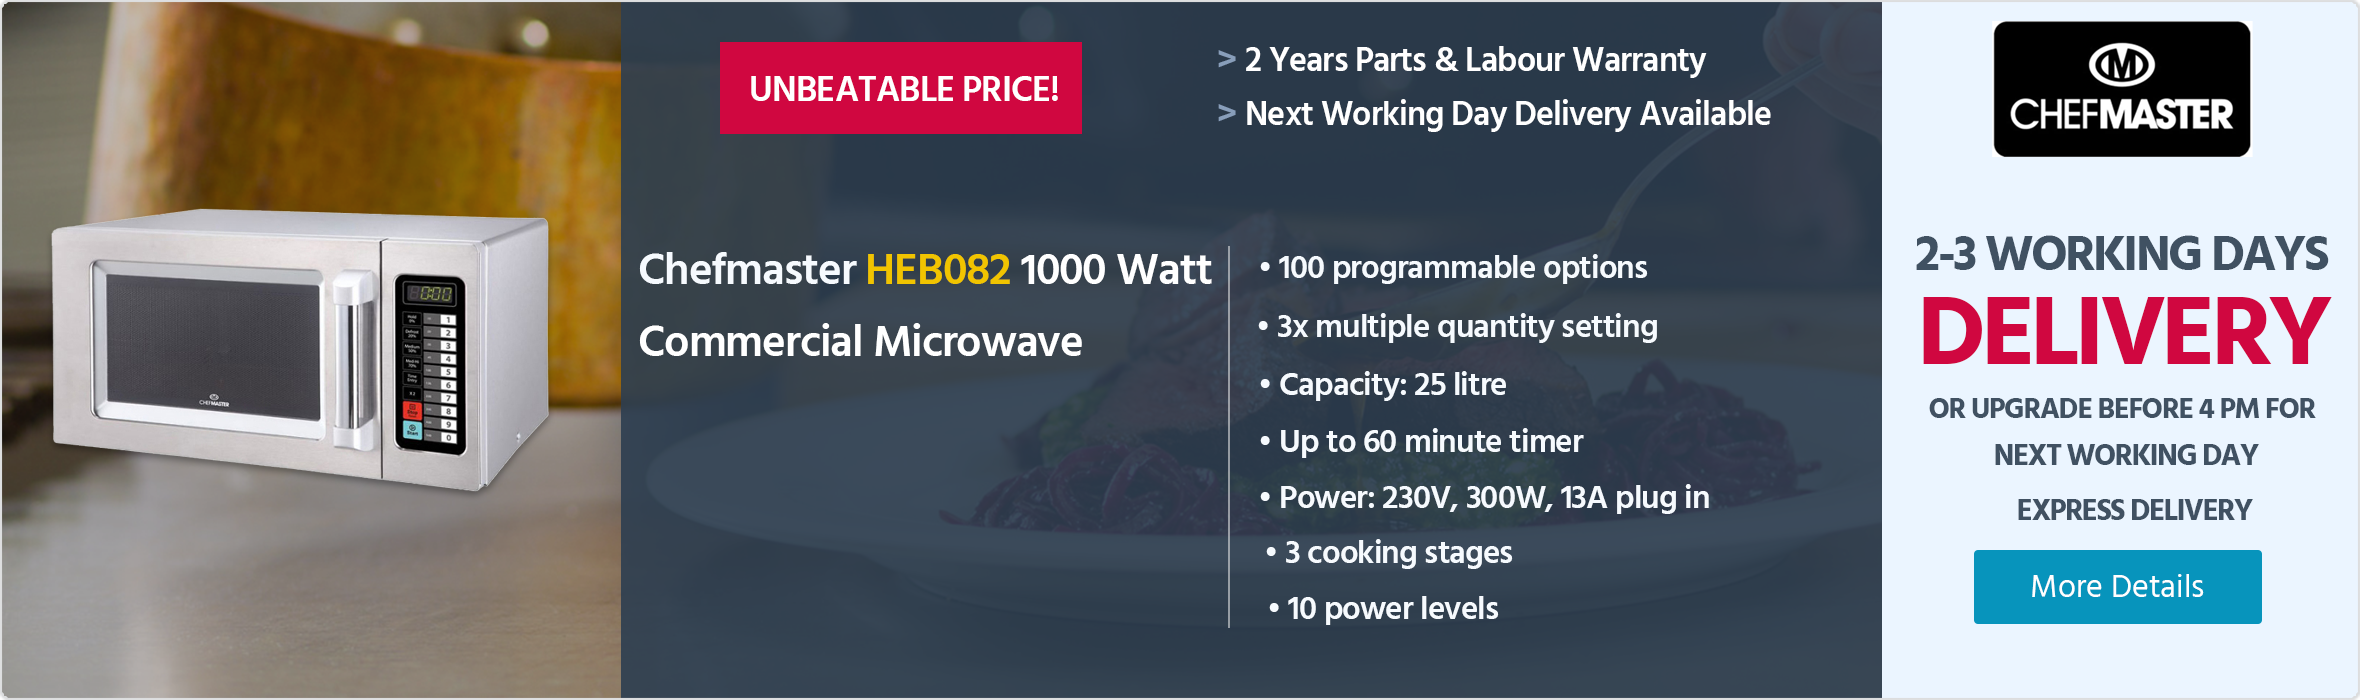 Chefmaster HEB082 1000 Watt Commercial Microwave